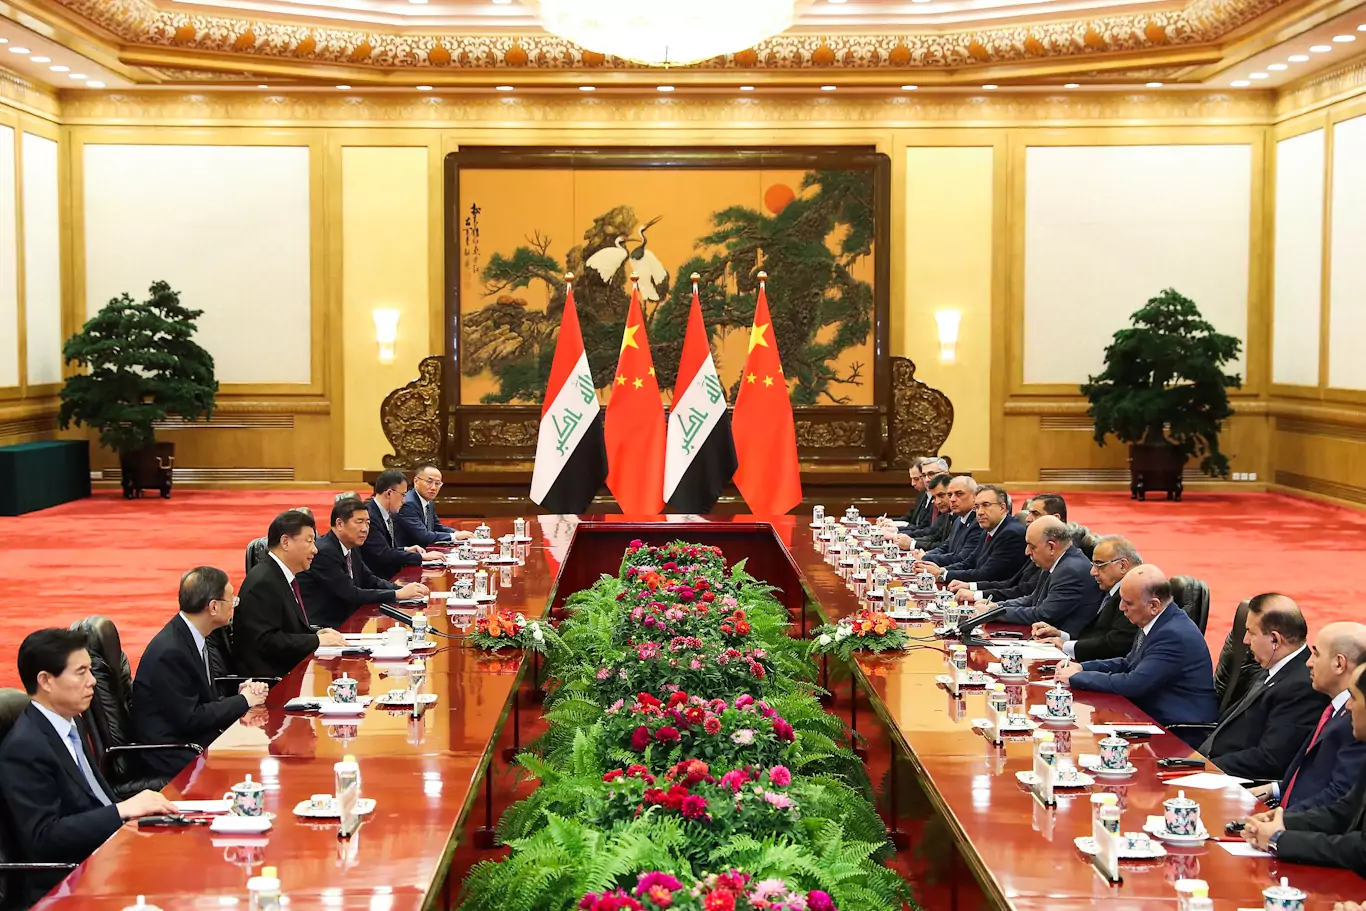 Састанак кинеске делегације предвођене председником Си Ђинпингом и ирачке делегације предвођене премијером Адел Абдулом-Махдијем у Великој сали народа, Пекинг, 23. септембар 2019. (Фото: Lintao Zhang/Pool Photo via AP) 